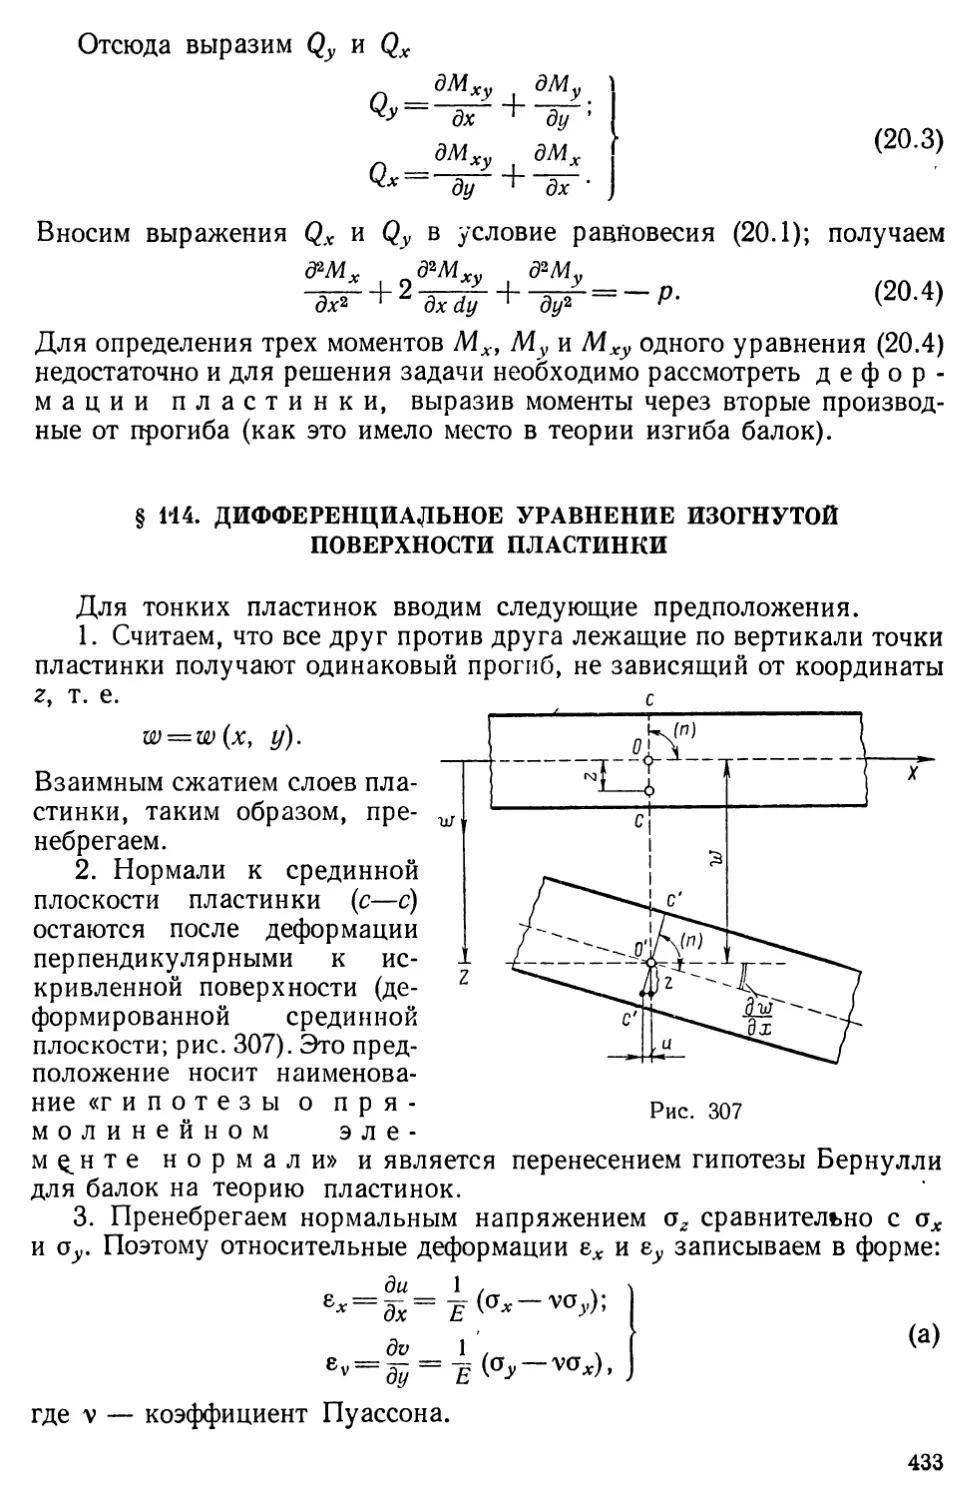 § 114. Дифференциальное уравнение изогнутой поверхности пластинки